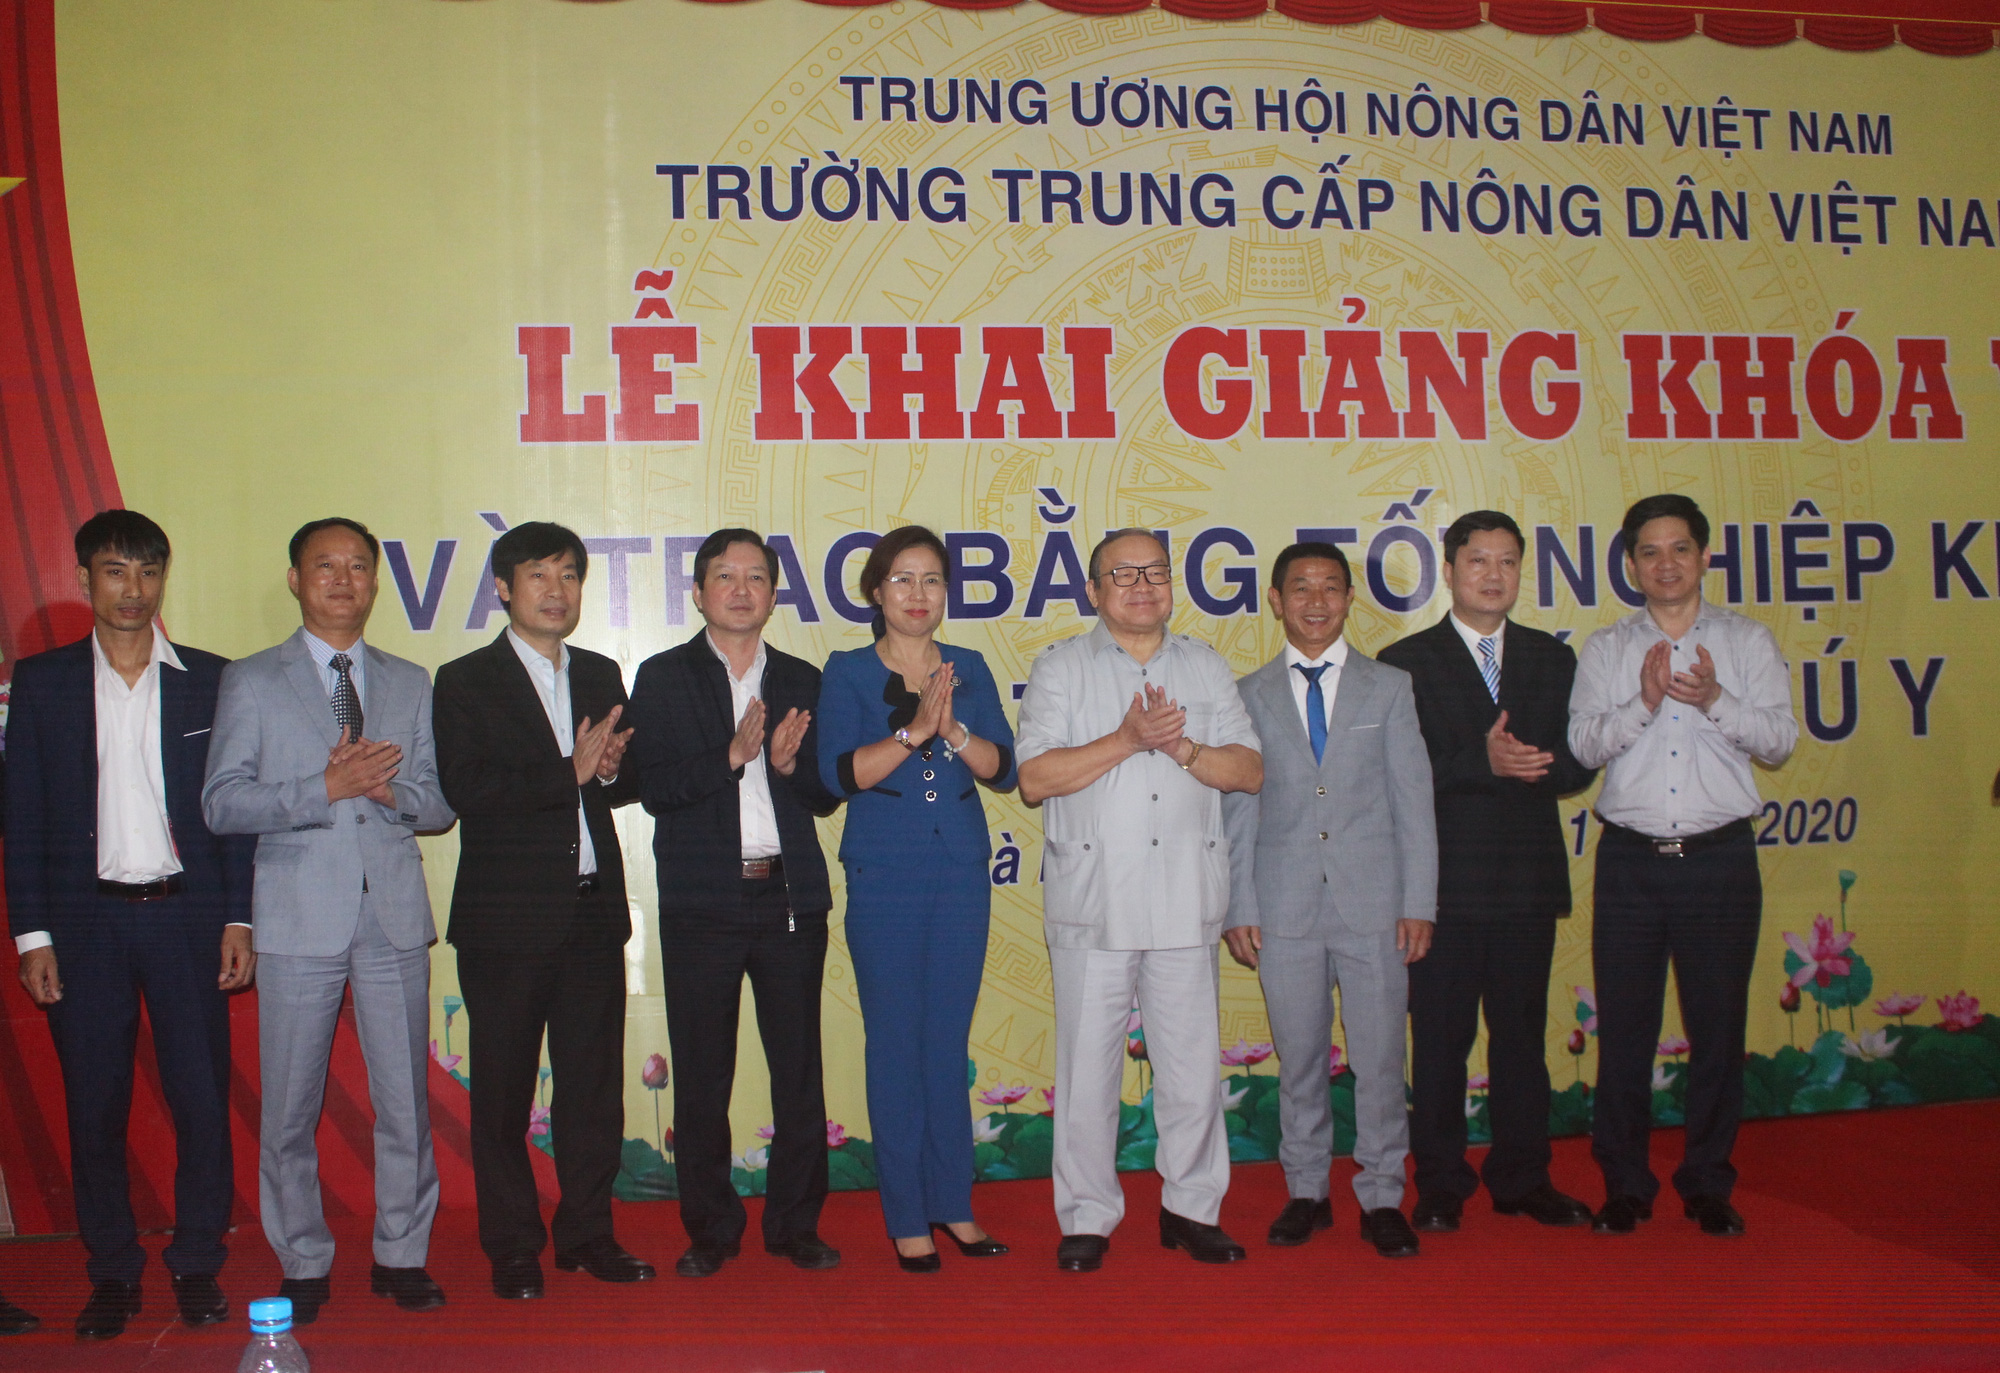 Trường Trung cấp Nông dân Việt Nam: Nâng cao chất lượng đào tạo nghề, nhân rộng mô hình hay - Ảnh 1.